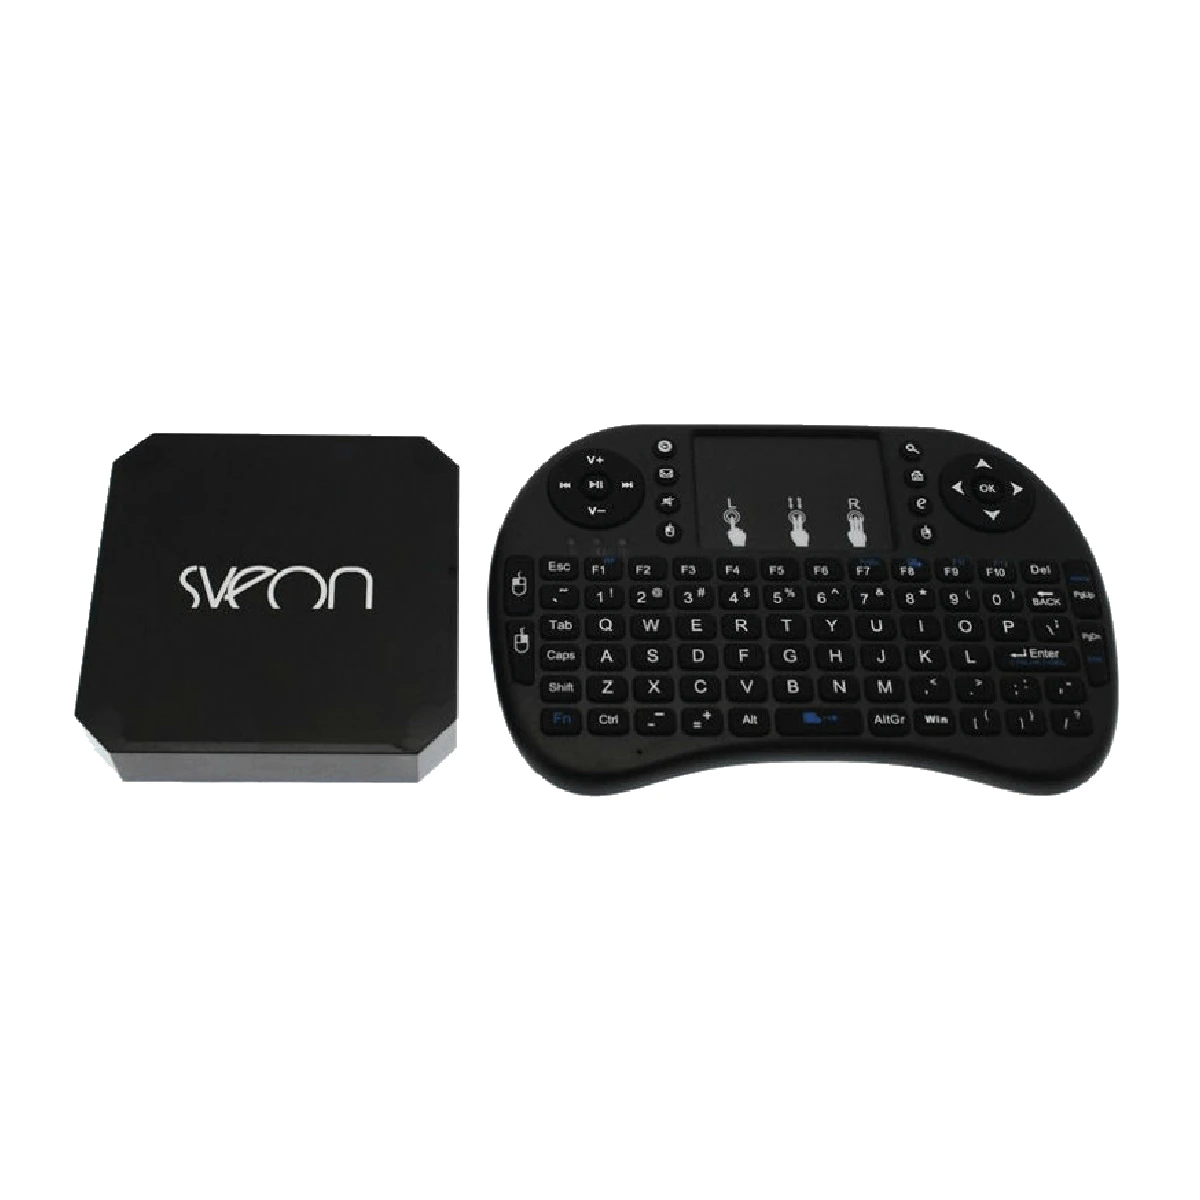 Reproductor multimedia Sveon Mini Android TV Box SBX600 + Teclado Wi-Fi